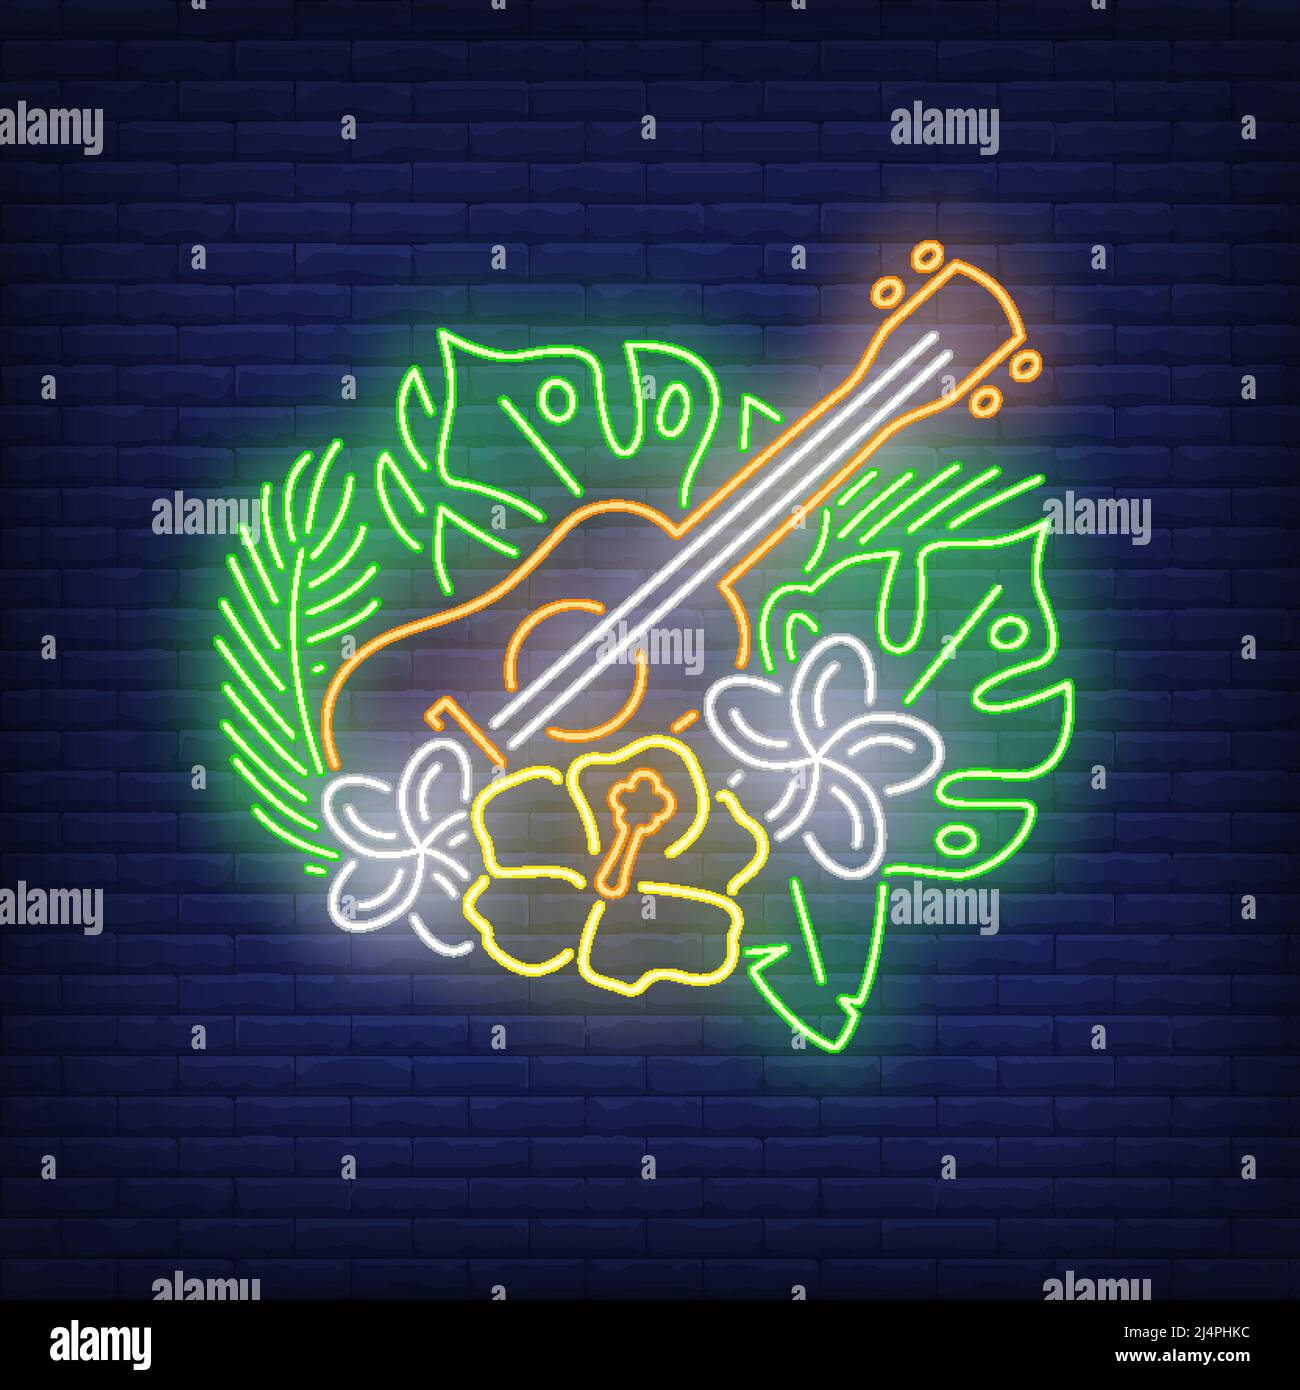 Ukulele con segno al neon ibiscuses. Fiori tropicali, foglie verdi e chitarra. Elementi di banner o cartelloni luminosi. Illustrazione vettoriale in stile neon Illustrazione Vettoriale